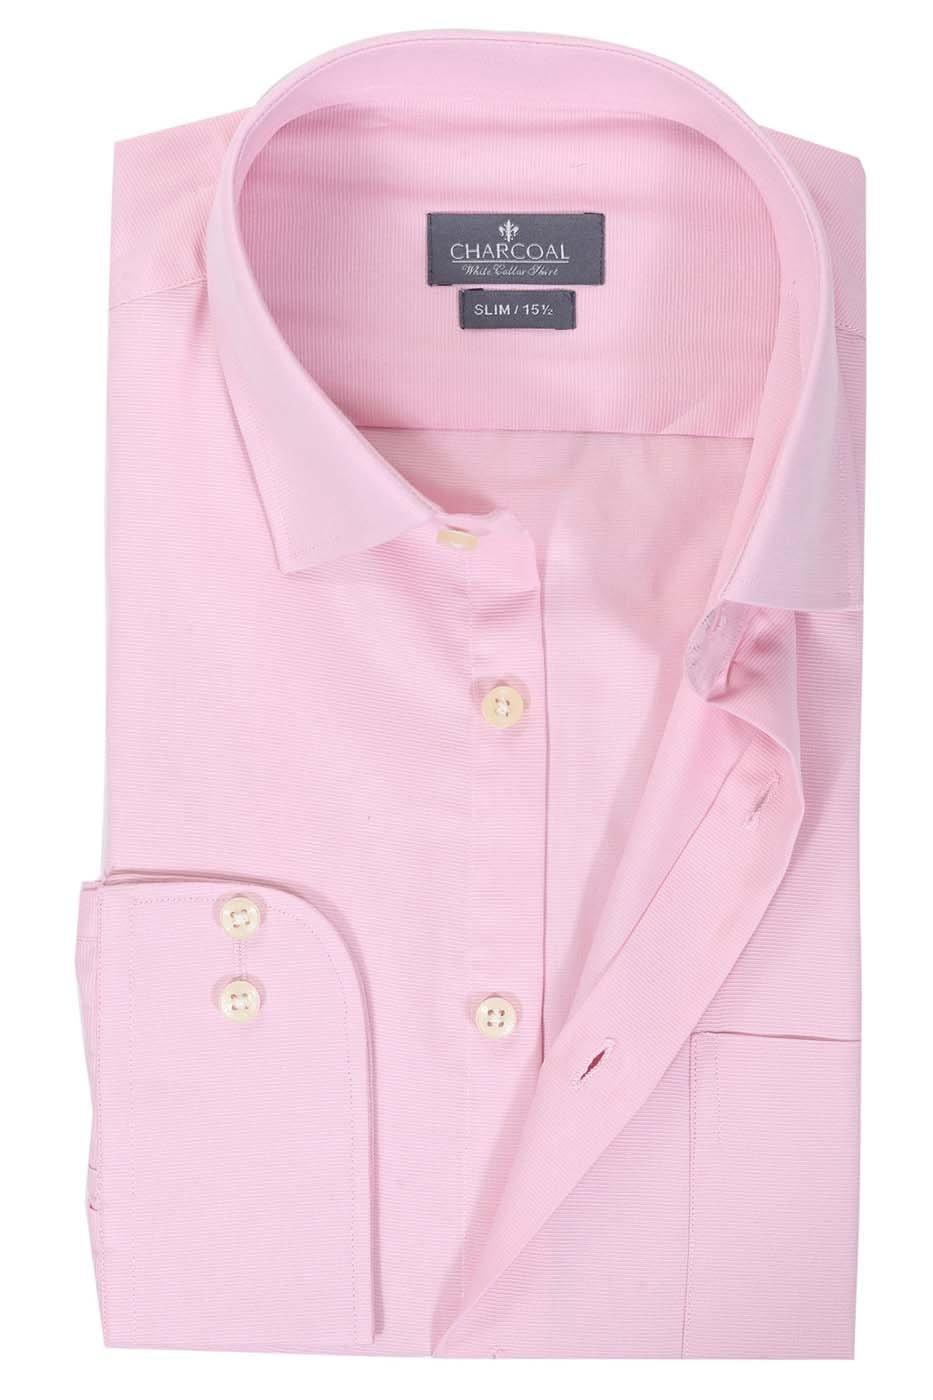 Dress Shirt Pink at Charcoal Clothing